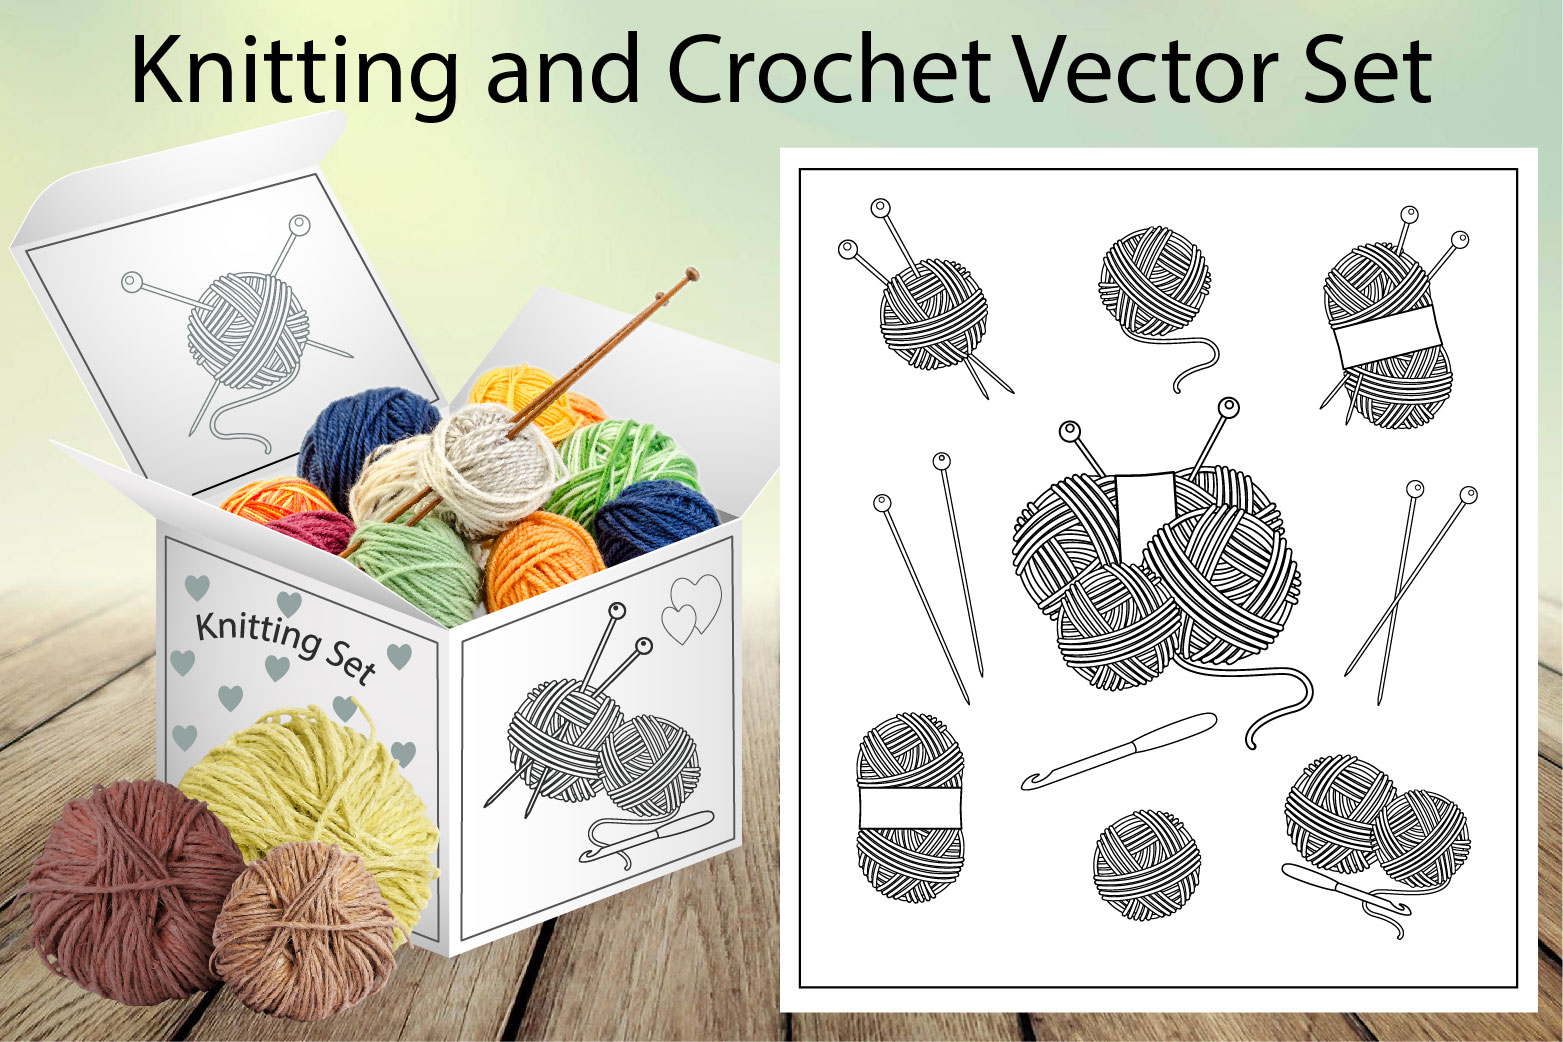 knitting and crochet vector set oblozhka 01 975